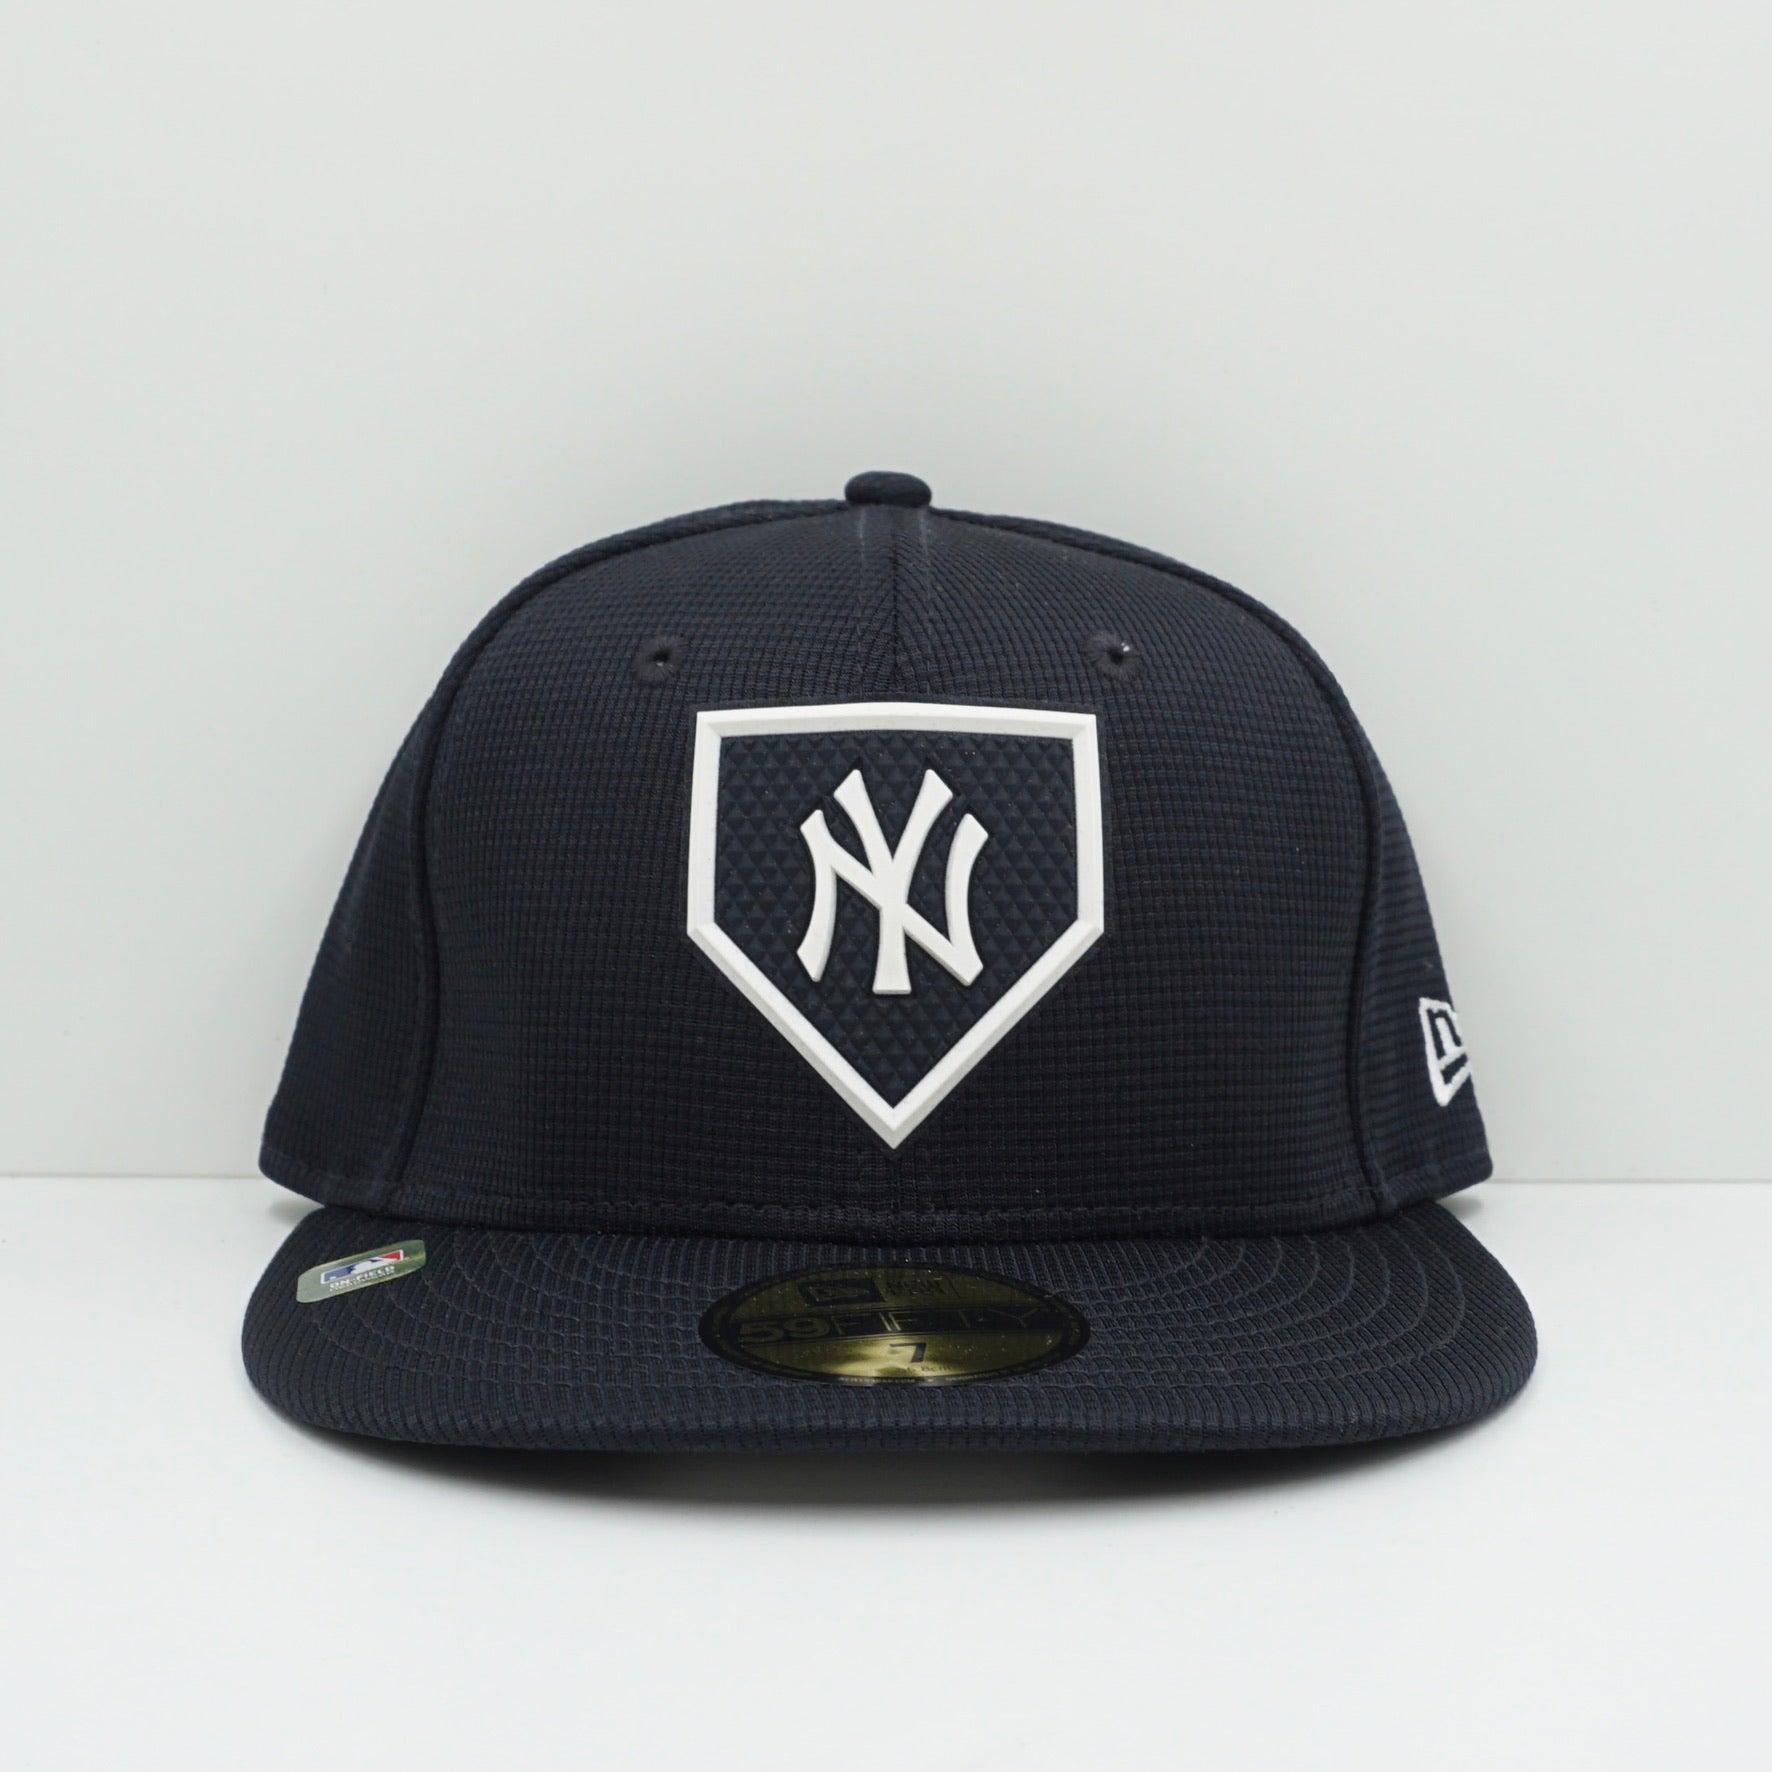 New Era New York Yankees Navy White Cap